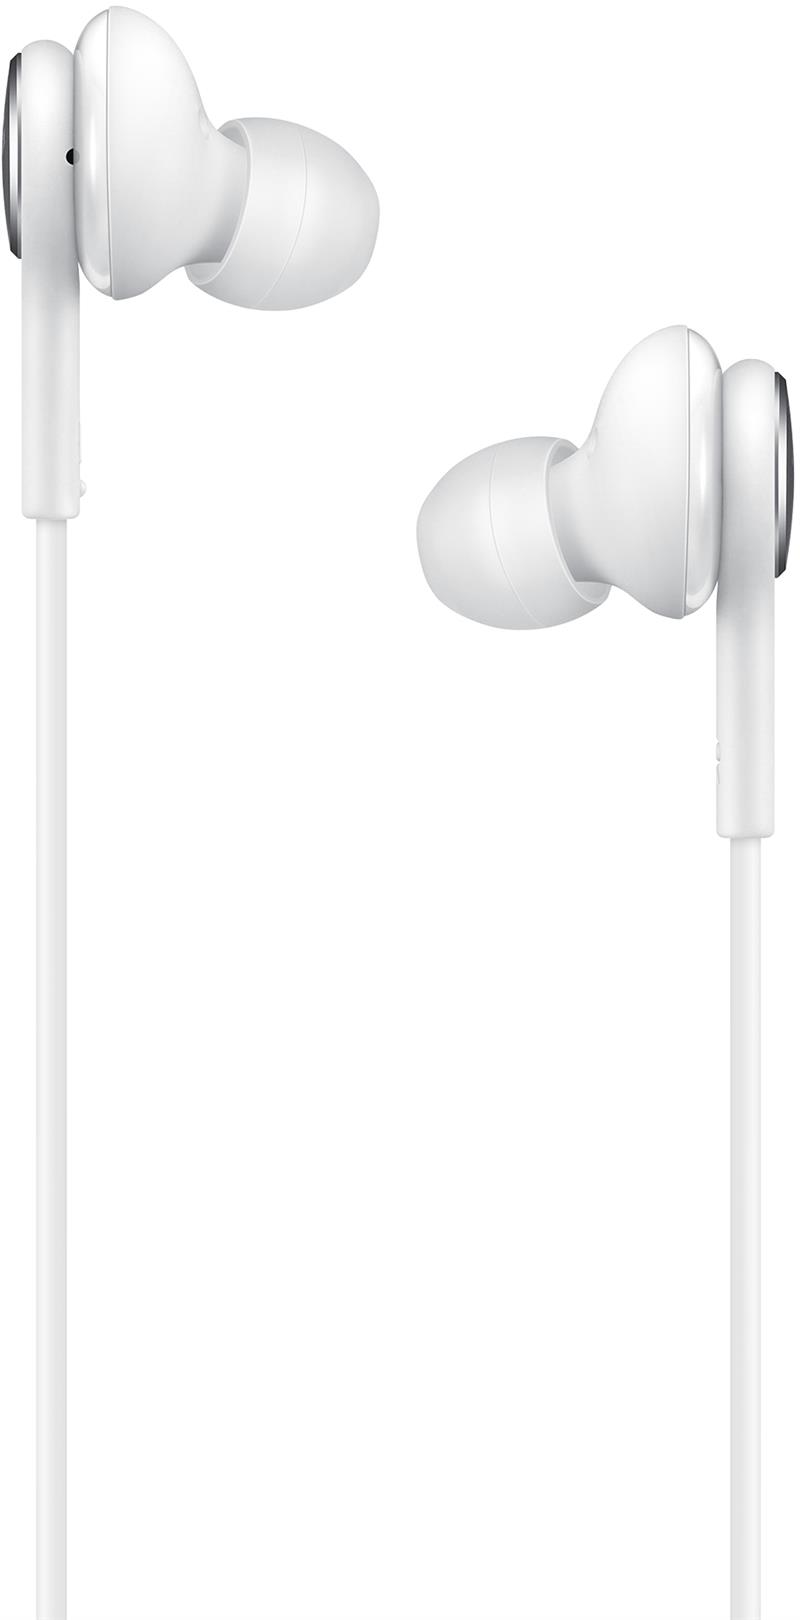 EO-IC100BWEGEU Samsung In-ear Tuned by AKG USB-C Stereo Headset White Bulk